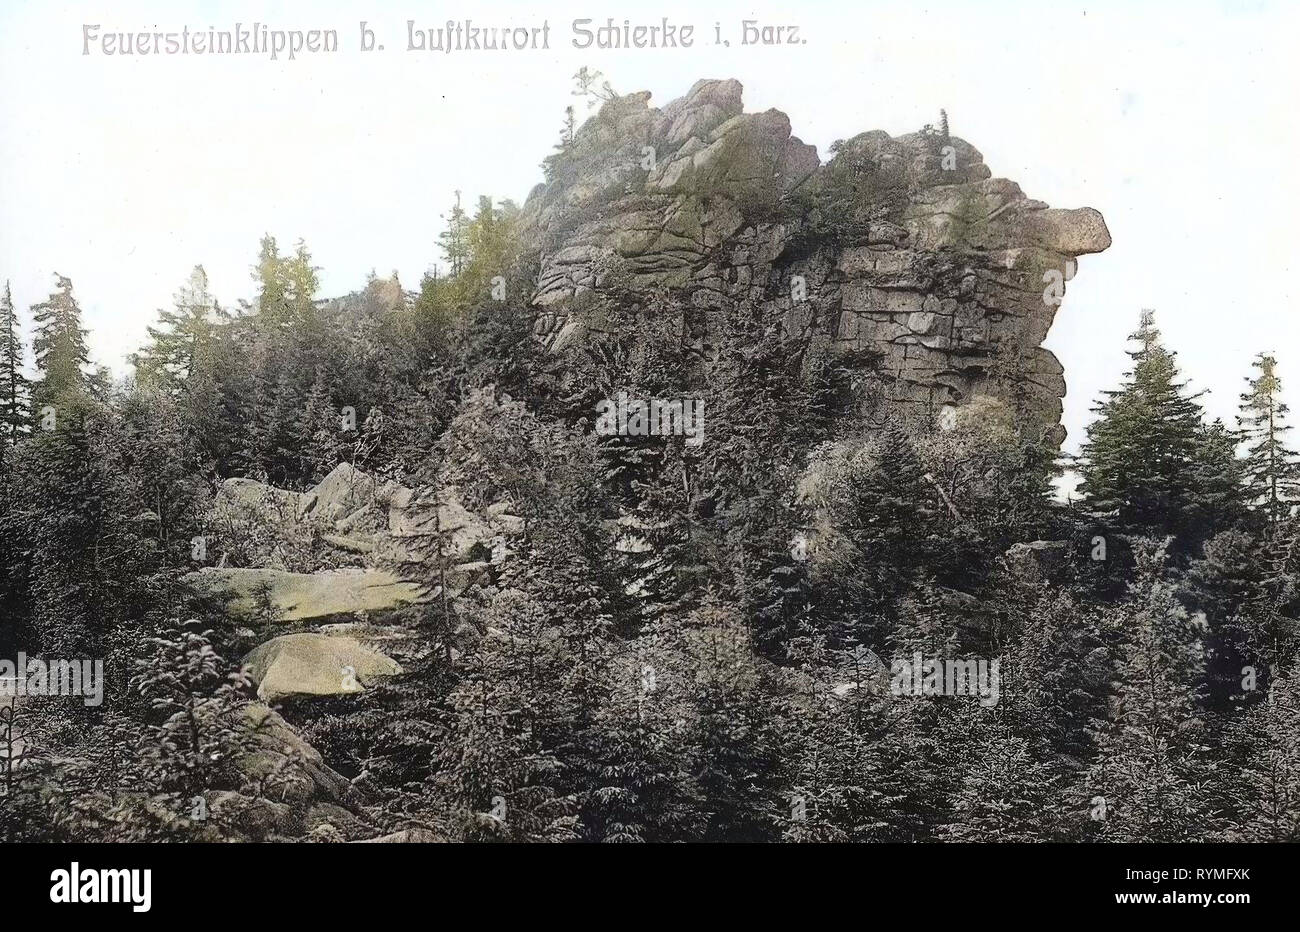 Feuersteinklippe, meteorización esferoidal, de 1907, en el Estado federado de Sajonia-Anhalt, Schierke, Feuersteinklippen, Alemania Foto de stock